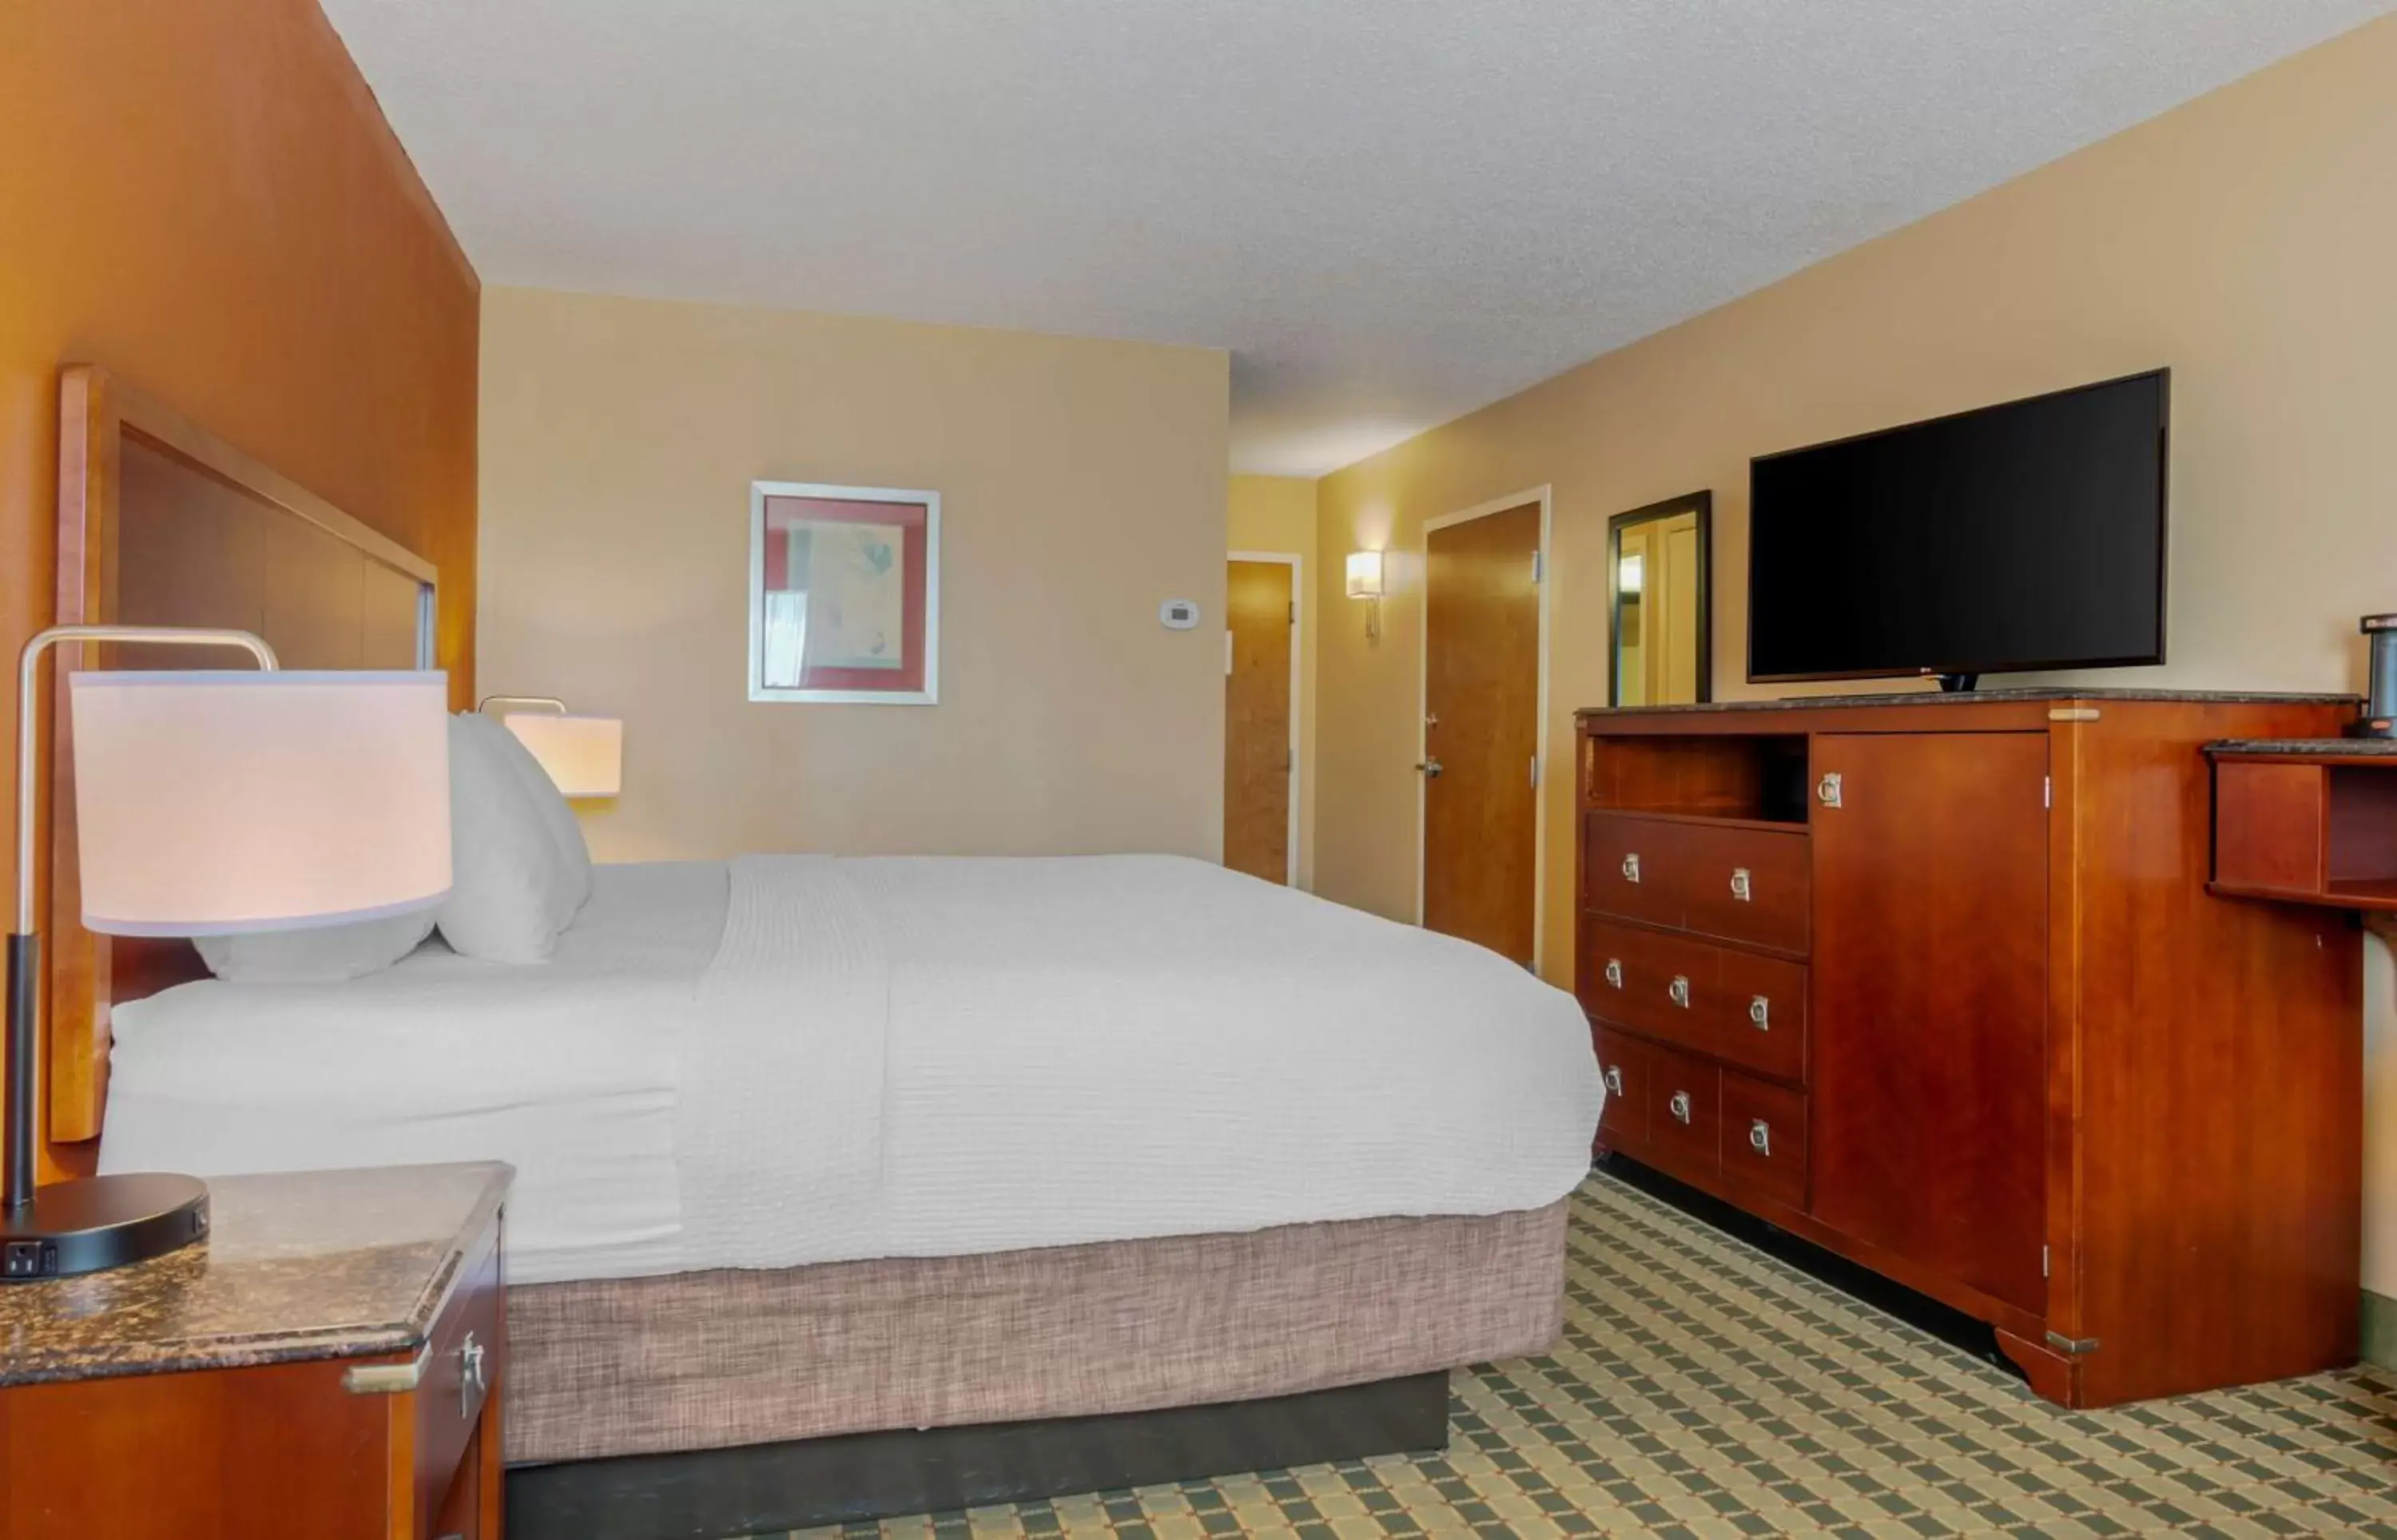 Bedroom, Bed in BEST WESTERN PLUS Inn at Valley View